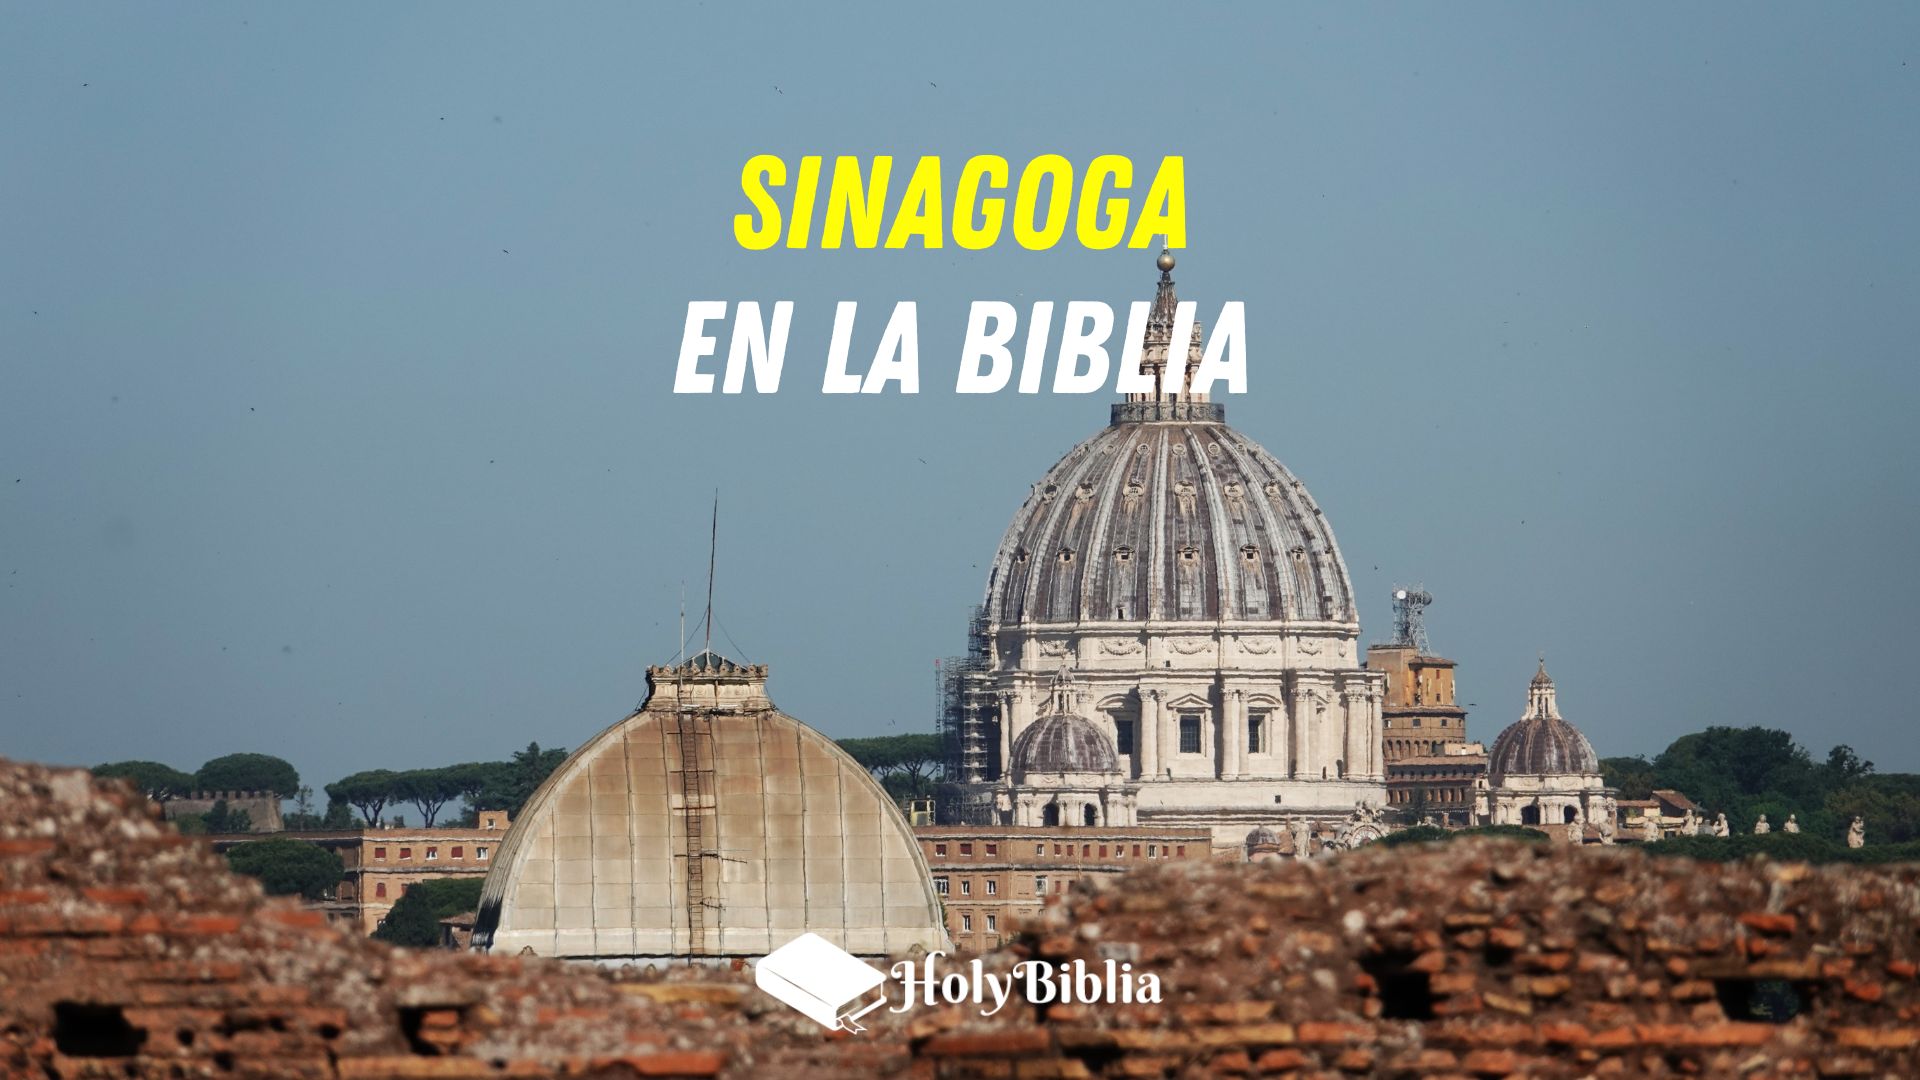 Qué es una Sinagoga en la Biblia